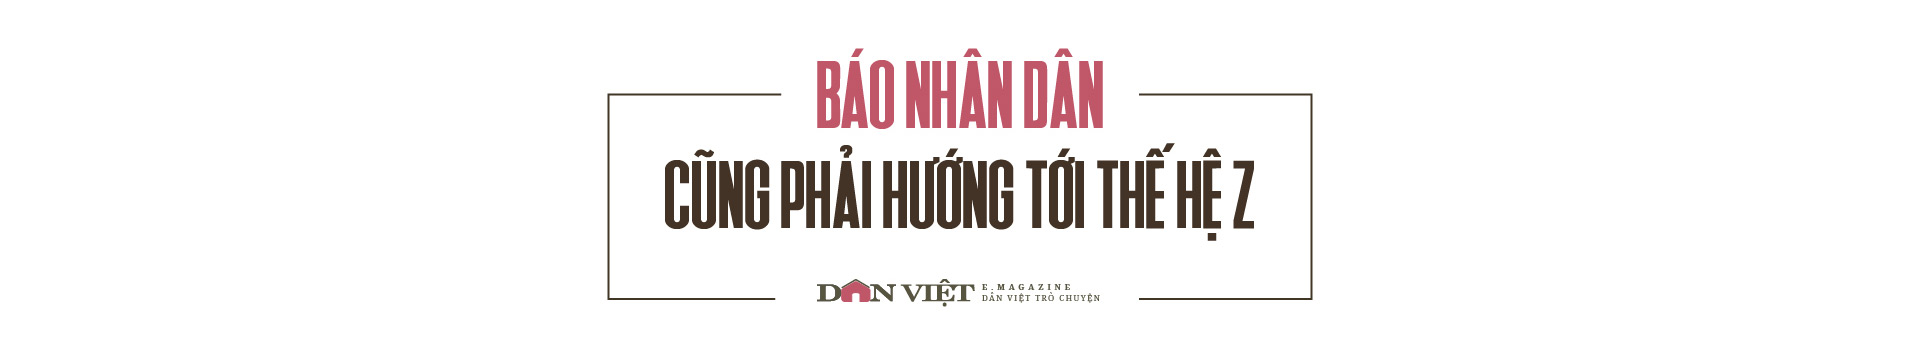 Nhà báo Lê Quốc Minh, Chủ tịch Hội Nhà báo Việt Nam: Khác biệt bằng tư duy và sáng tạo - Ảnh 1.